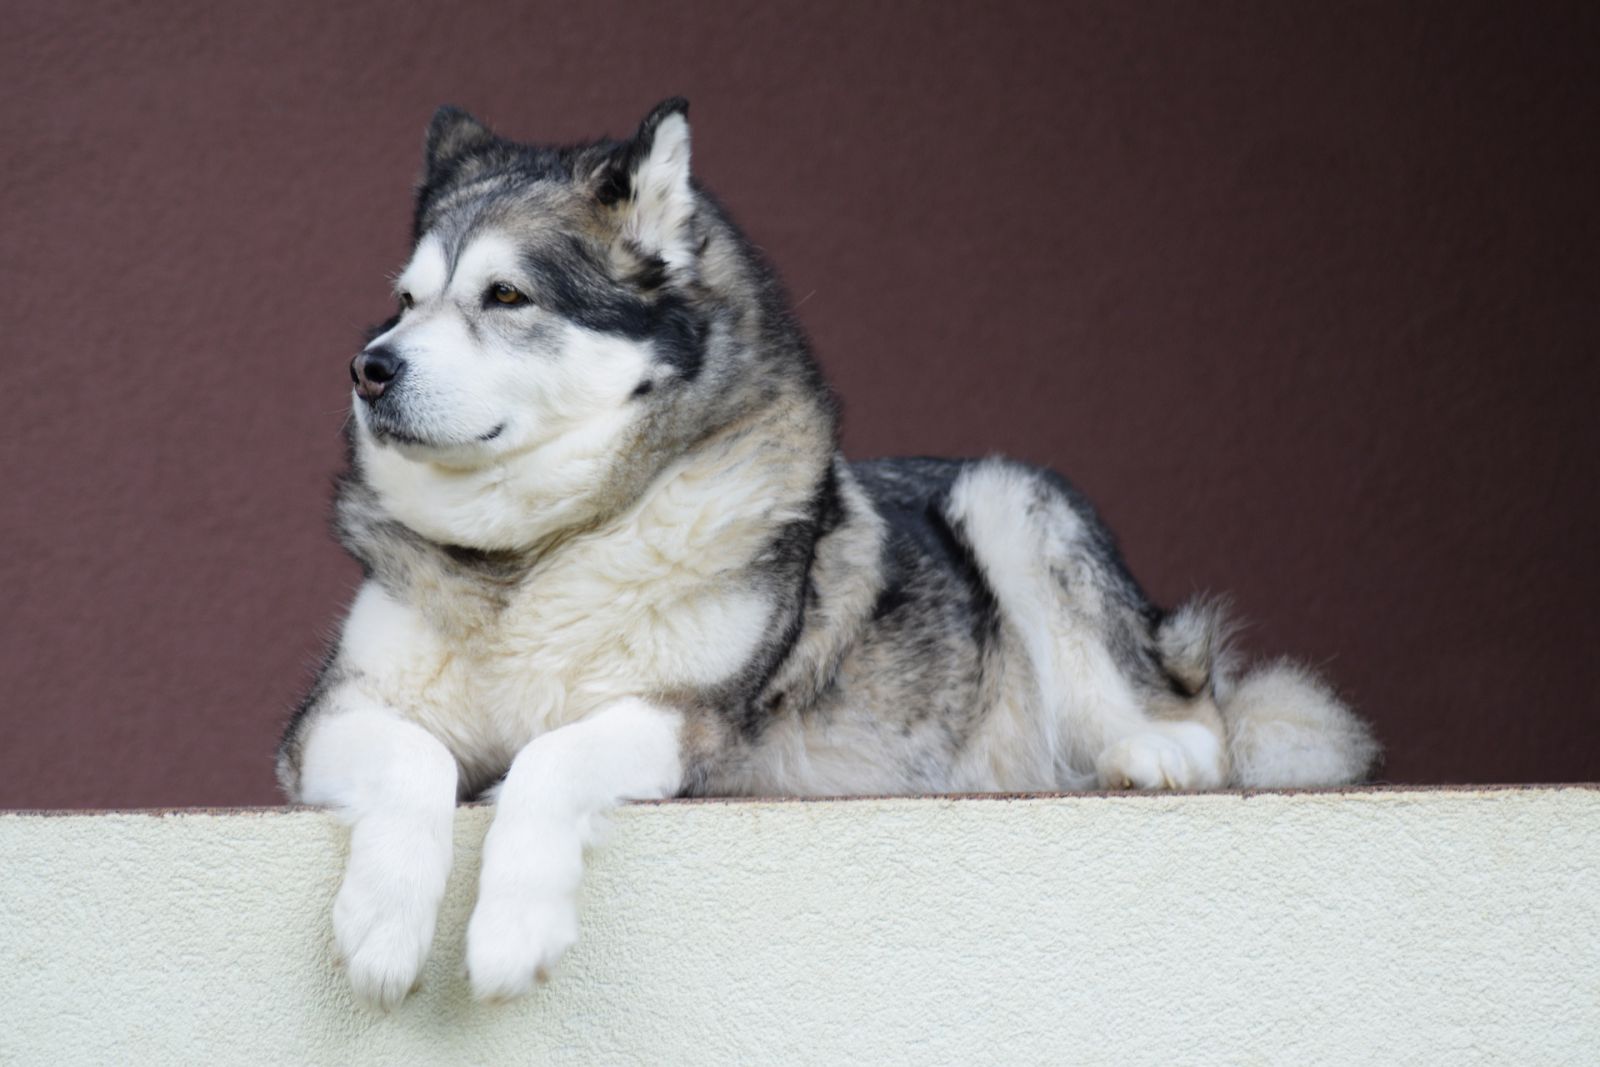 9458 hình ảnh về Chó Alaska rõ nét kích thước chất lượng cao nhất  Mua  bán hình ảnh shutterstock giá rẻ chỉ từ 3000 đ trong 2 phút